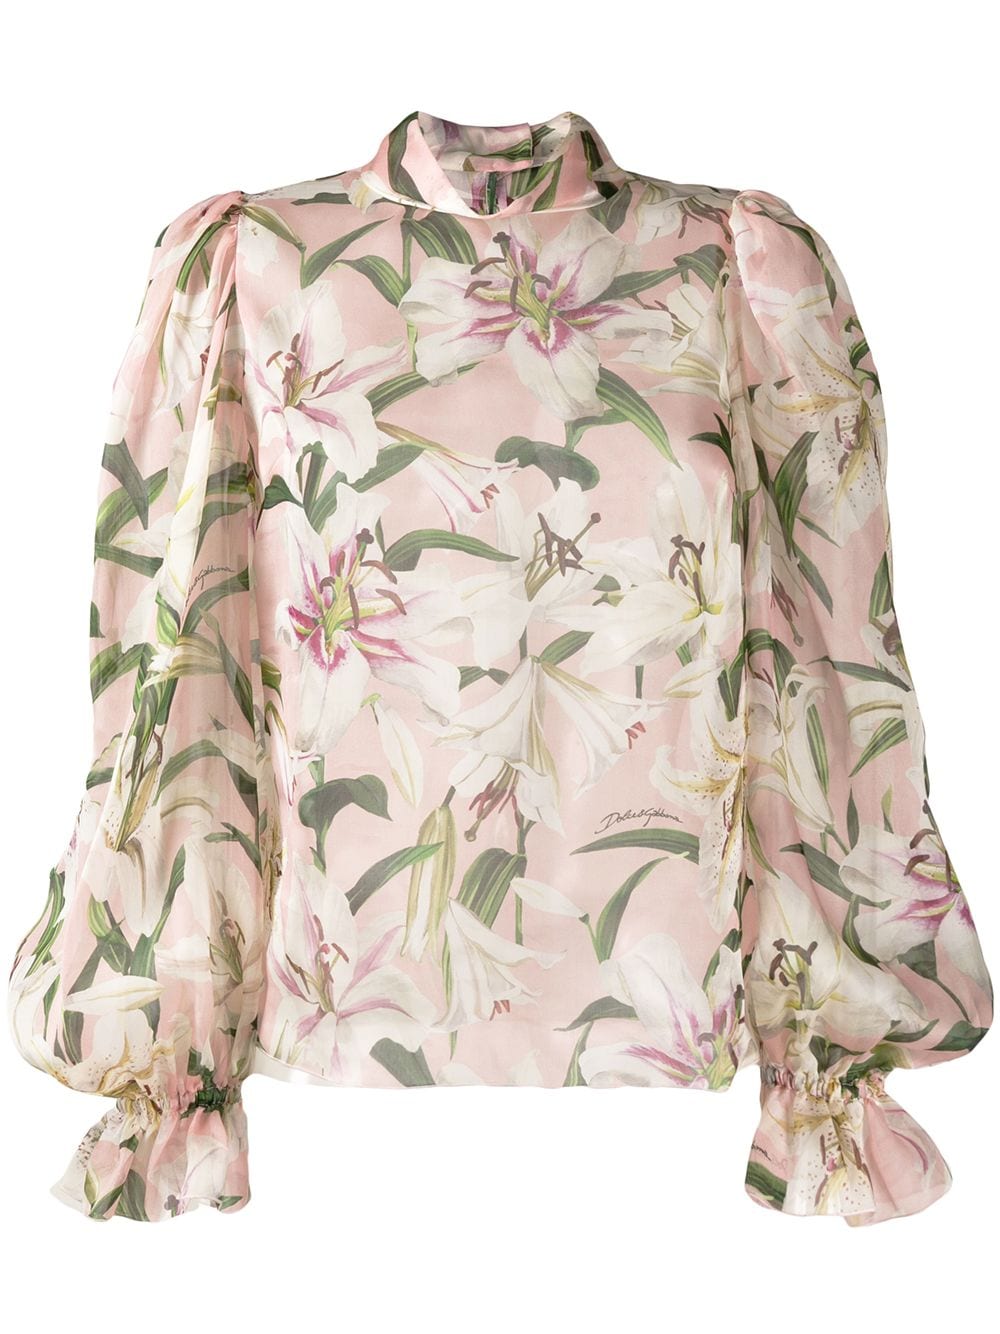 фото Dolce & Gabbana блузка с цветочным принтом